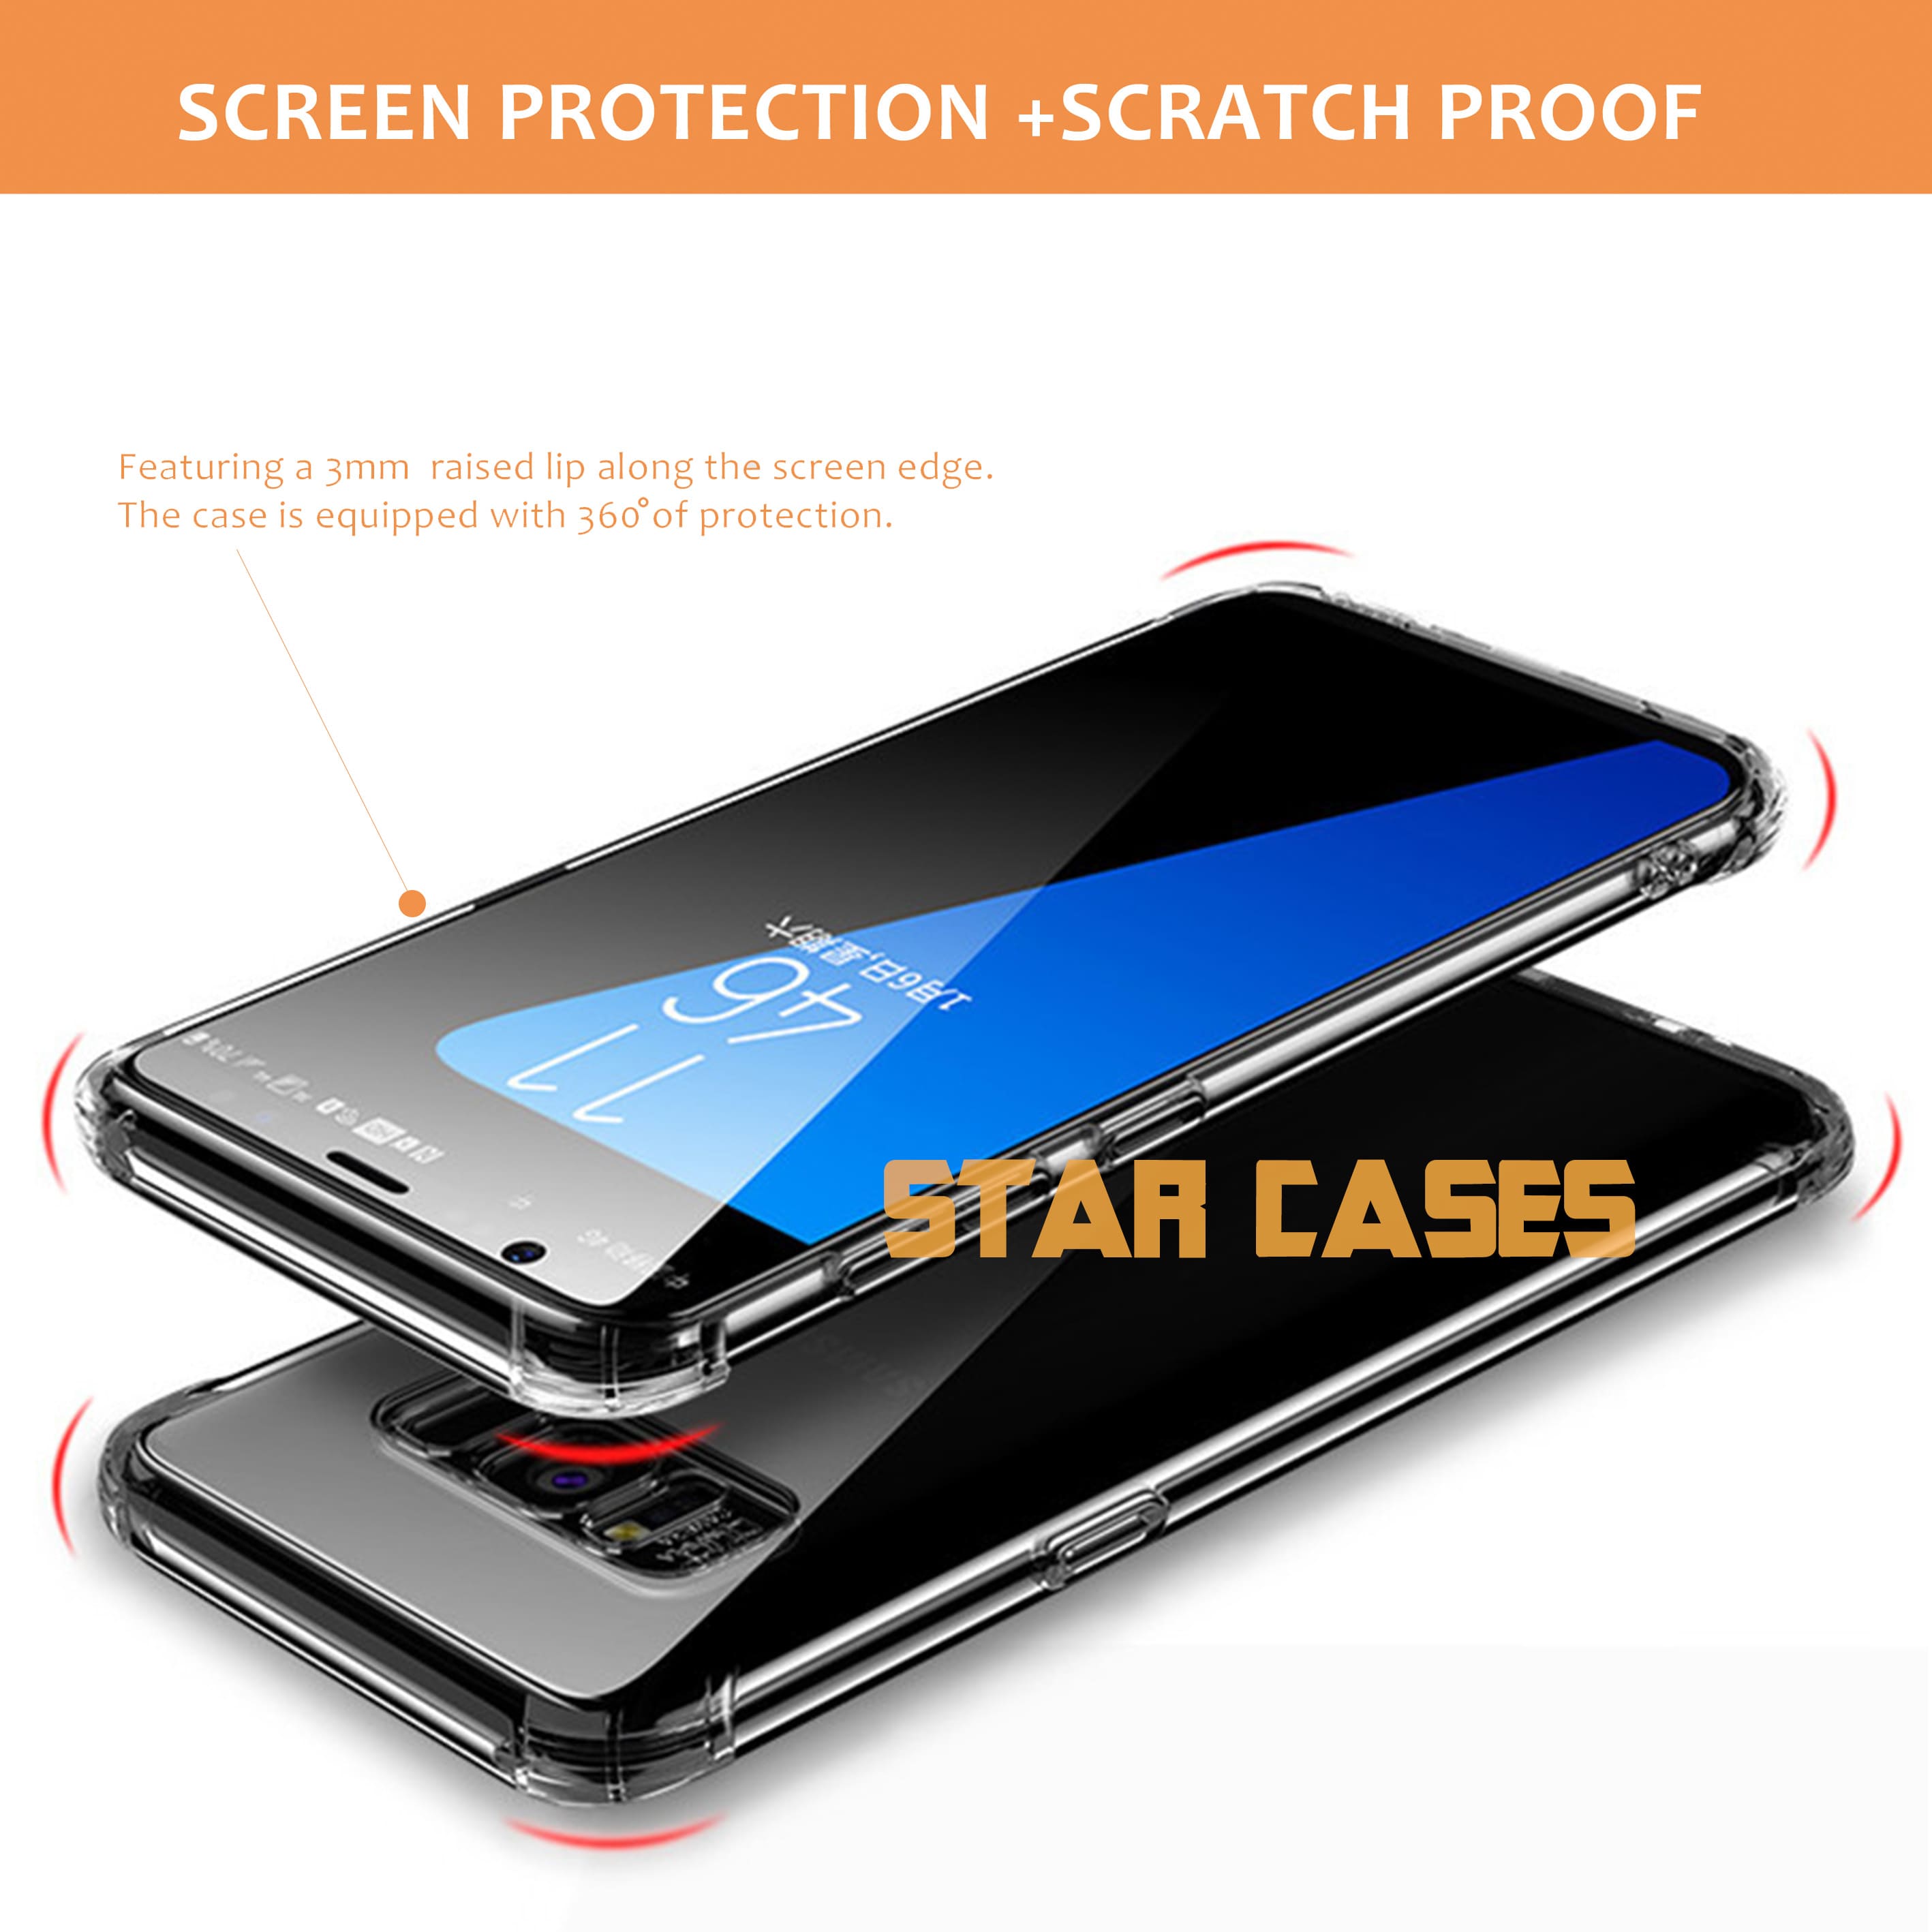 Samsung A20/30 Clear Soft Bumper Case